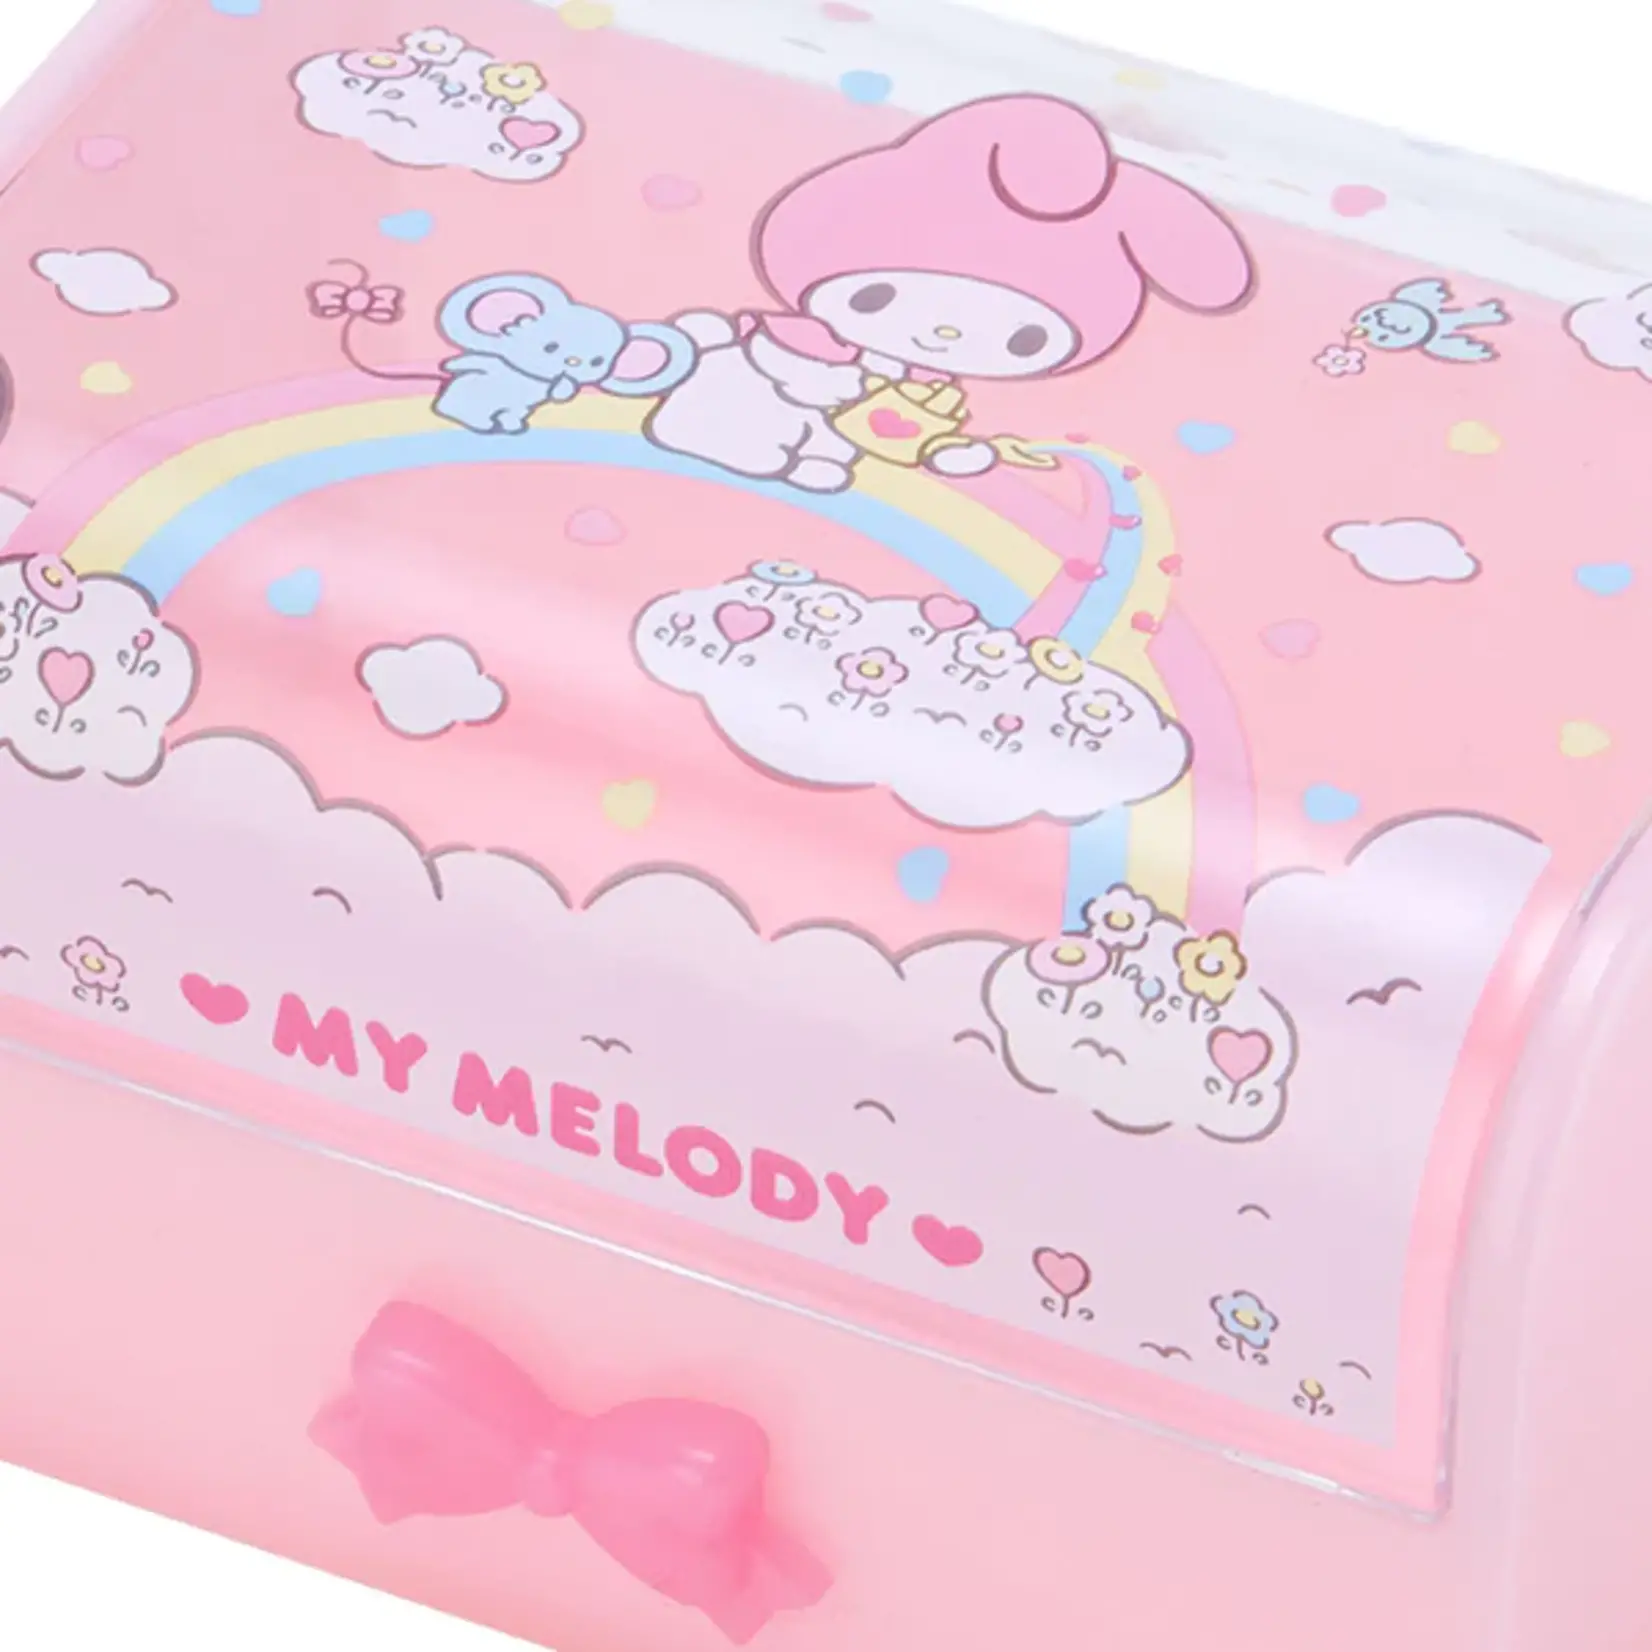 Sanrio My Melody Accessory Case